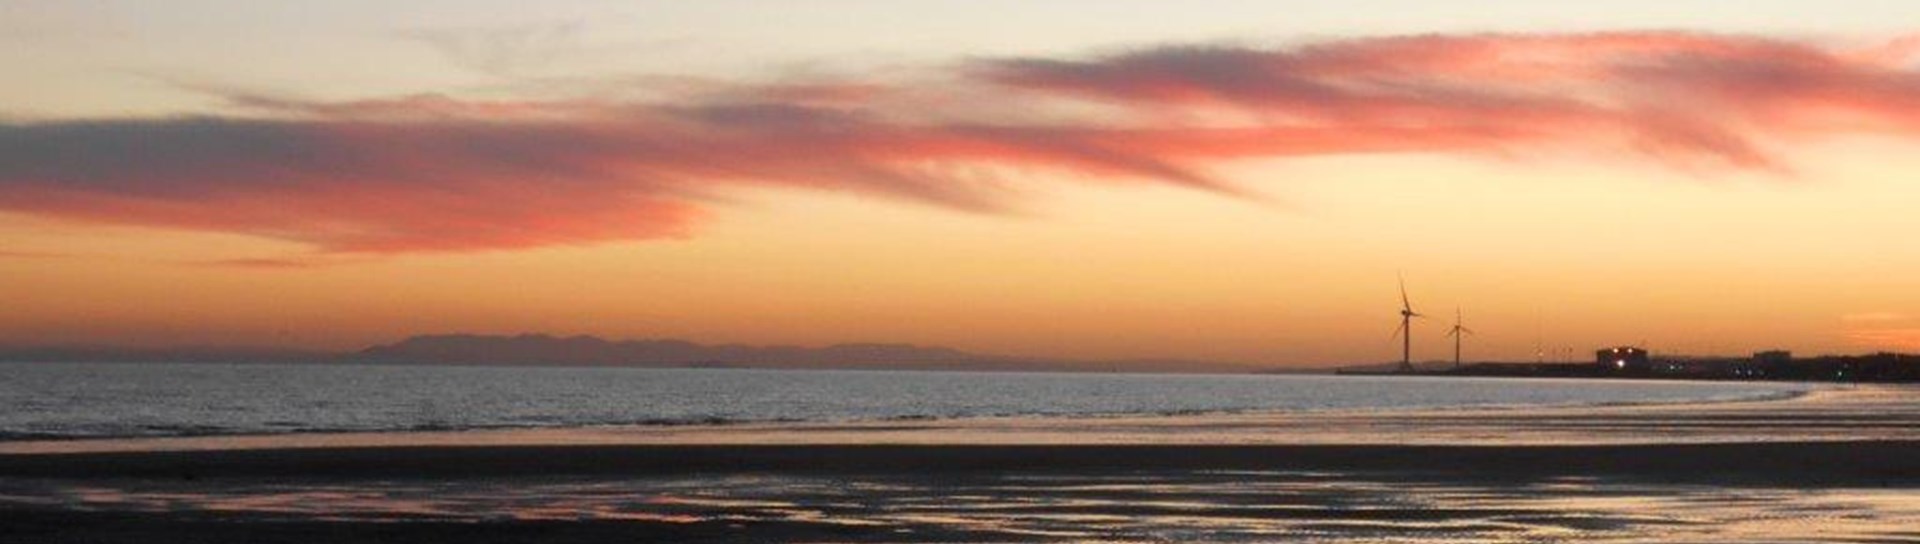 Leven Beach at sunset.https://www.keepscotlandbeautiful.org/community-and-place/scotlands-beach-awards/beach-map/leven-east/